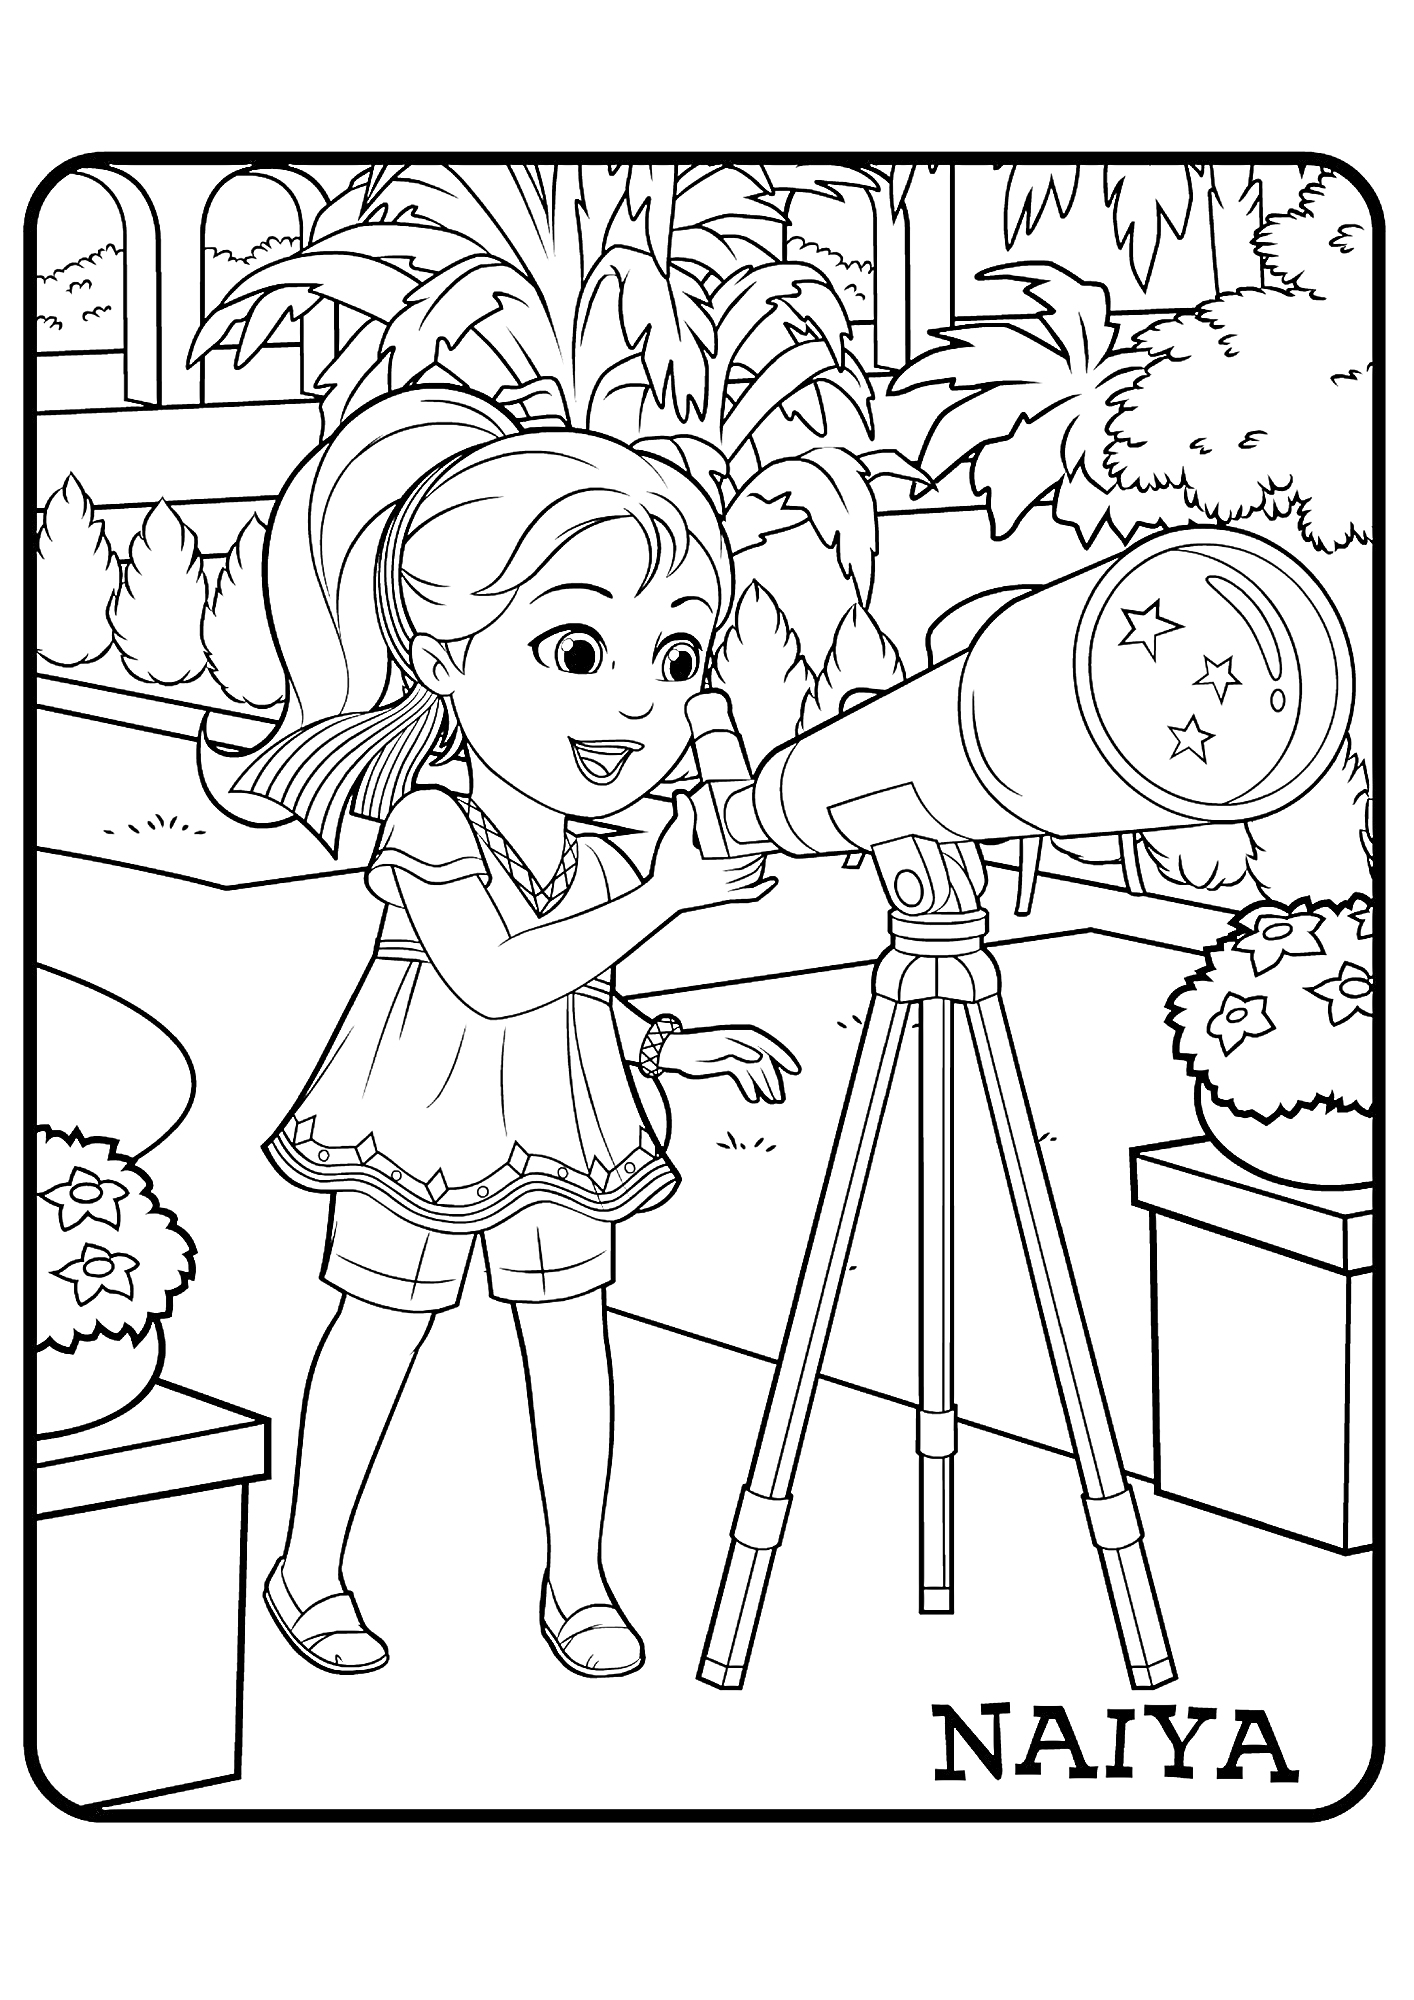 Девочка по имени Найя рассматривает небо через телескоп, находятся в саду с цветами и кустами